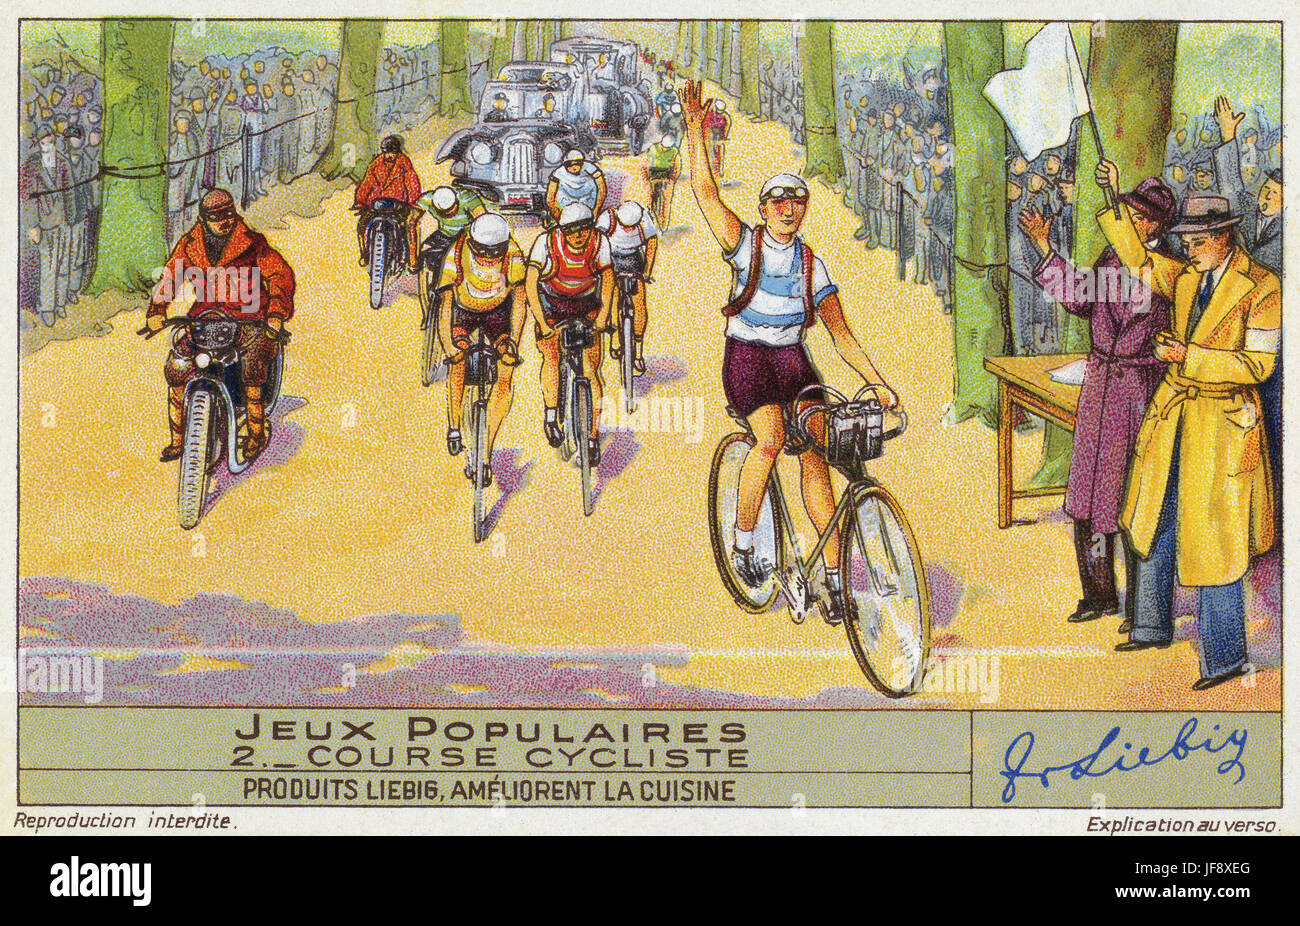 Course cycliste. Jeux populaires, au début du xxe siècle en France. Carte de collection Liebig, 1939 Banque D'Images